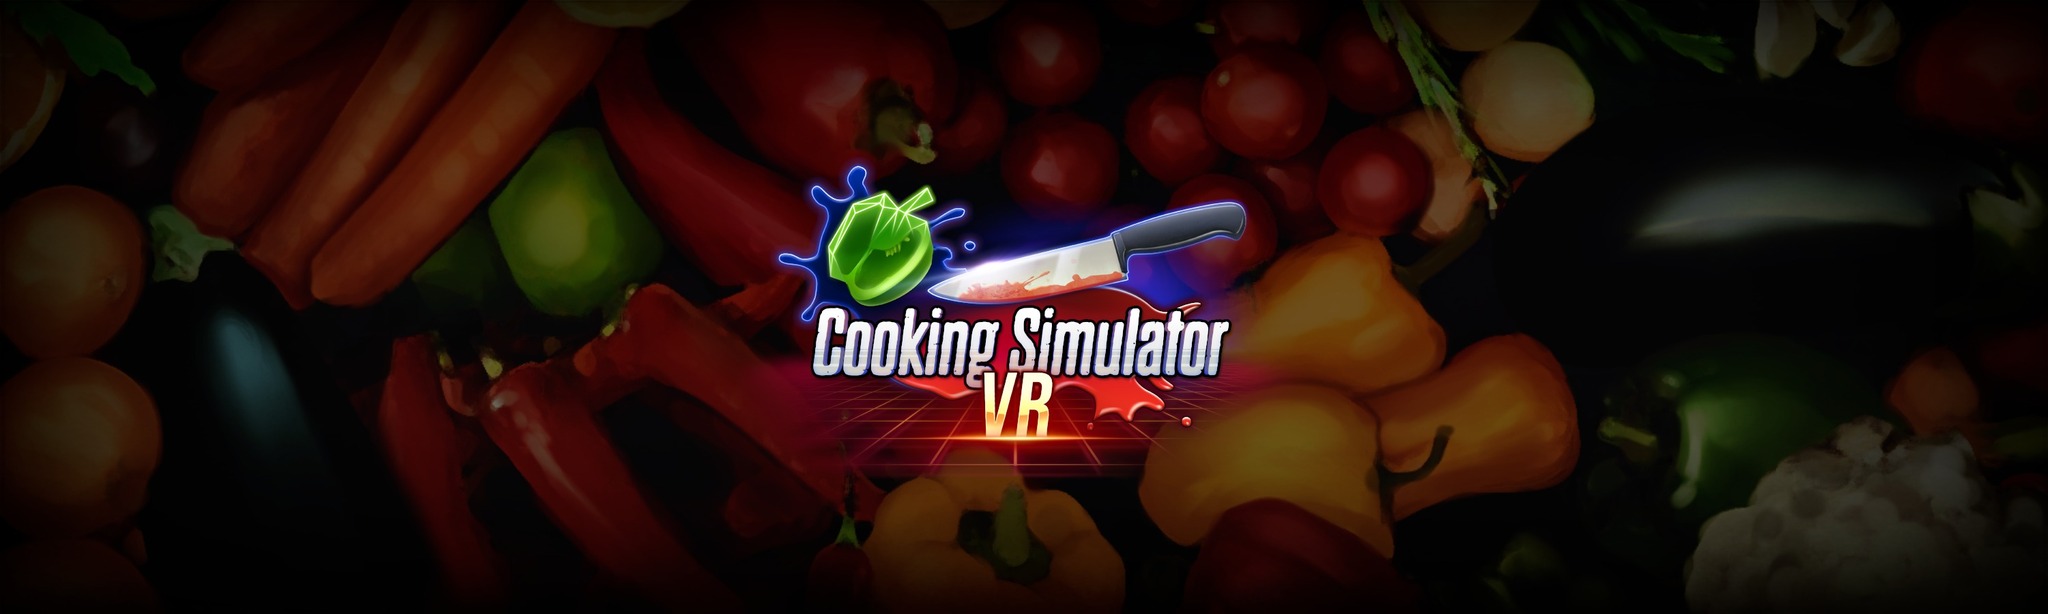 Cooking Simulator VR 25% off Referral Link! : r/OculusReferral